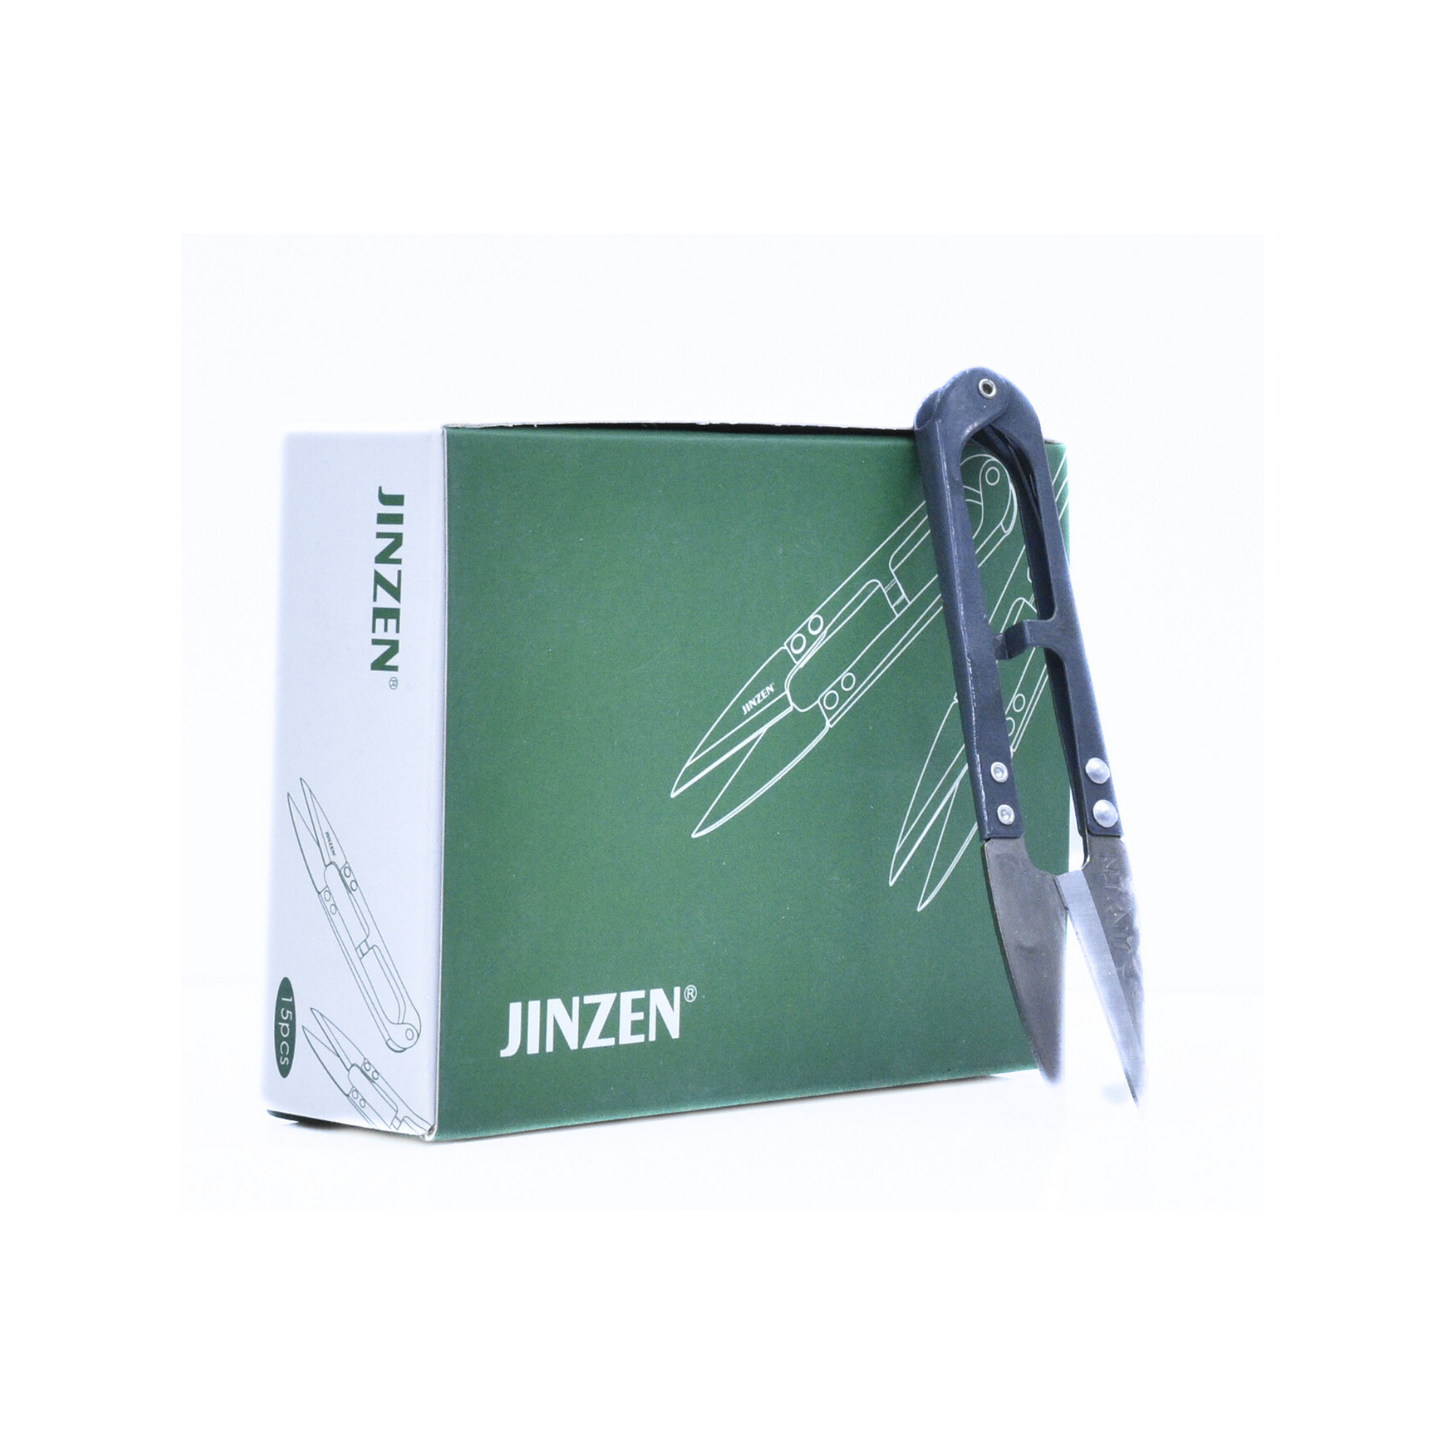 Jinzen thread trimmers